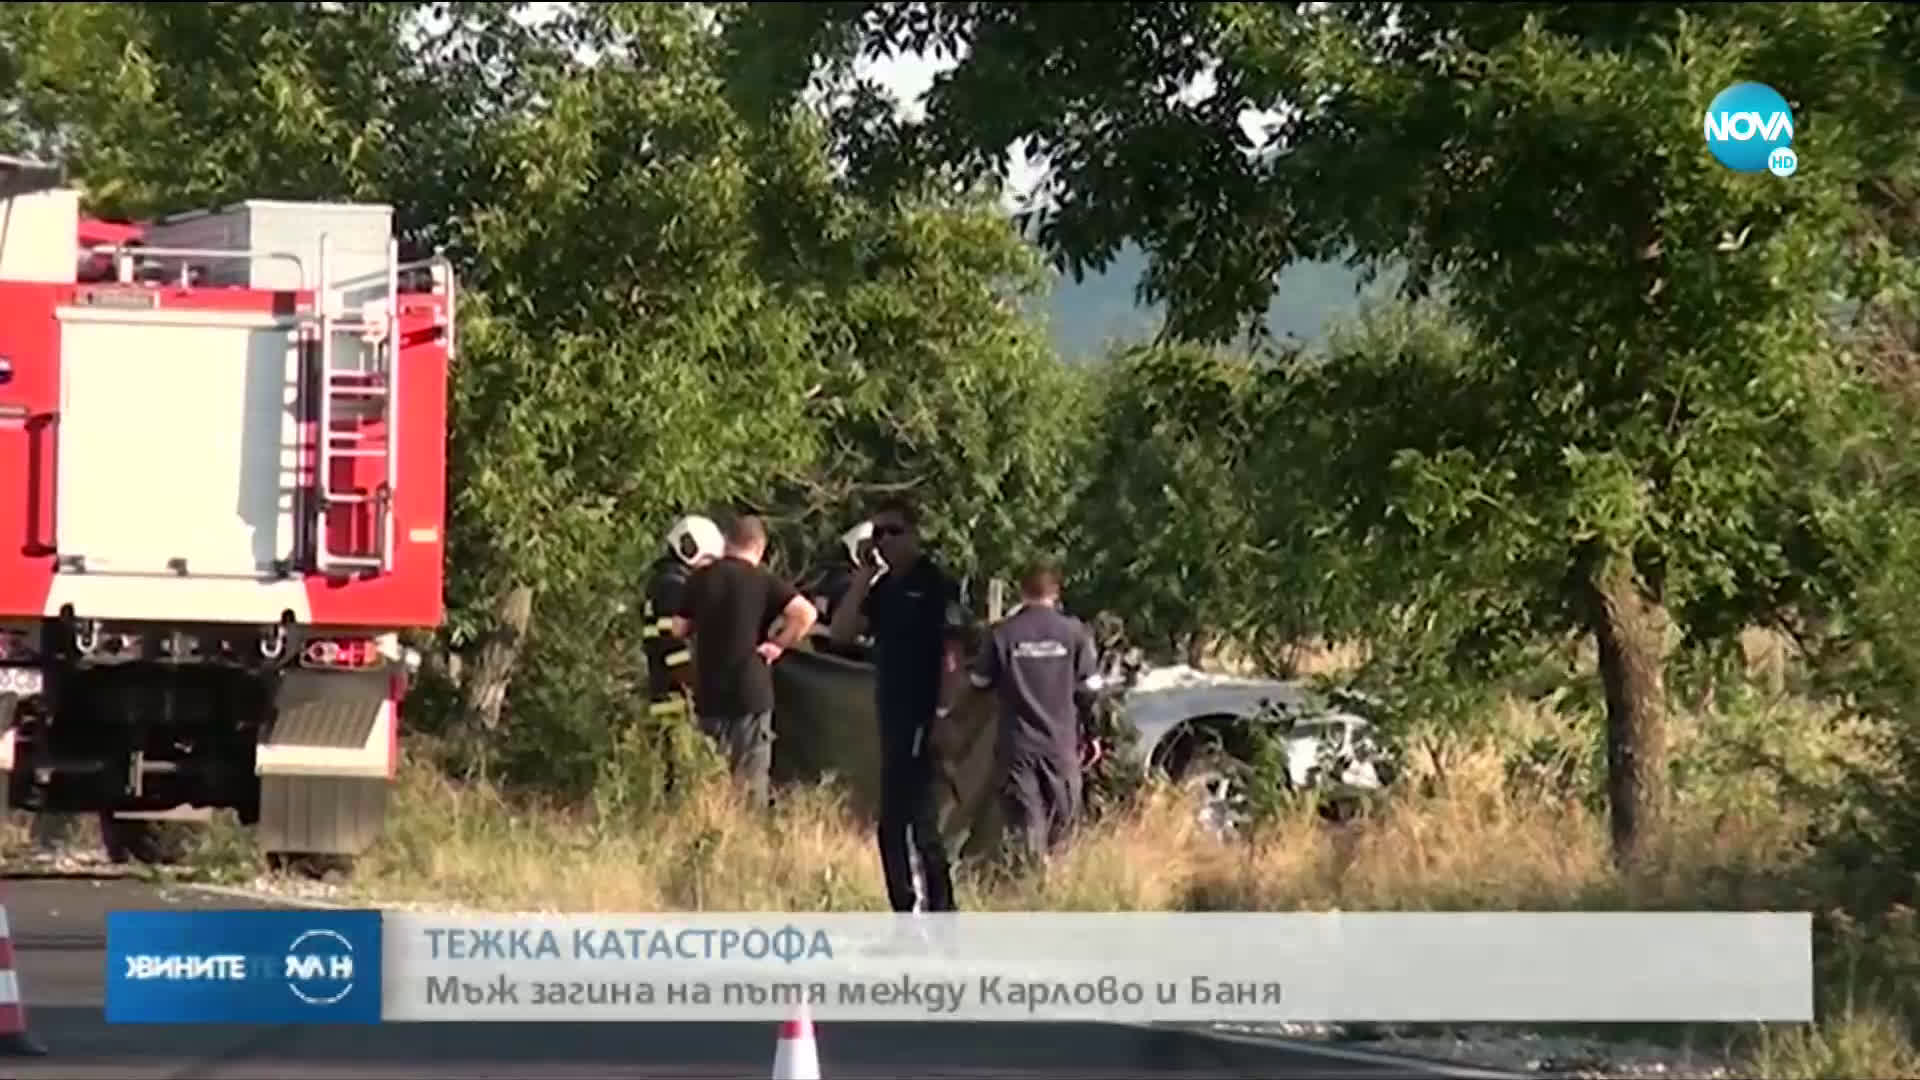 51-годишен мъж загина на пътя между Карлово и Баня